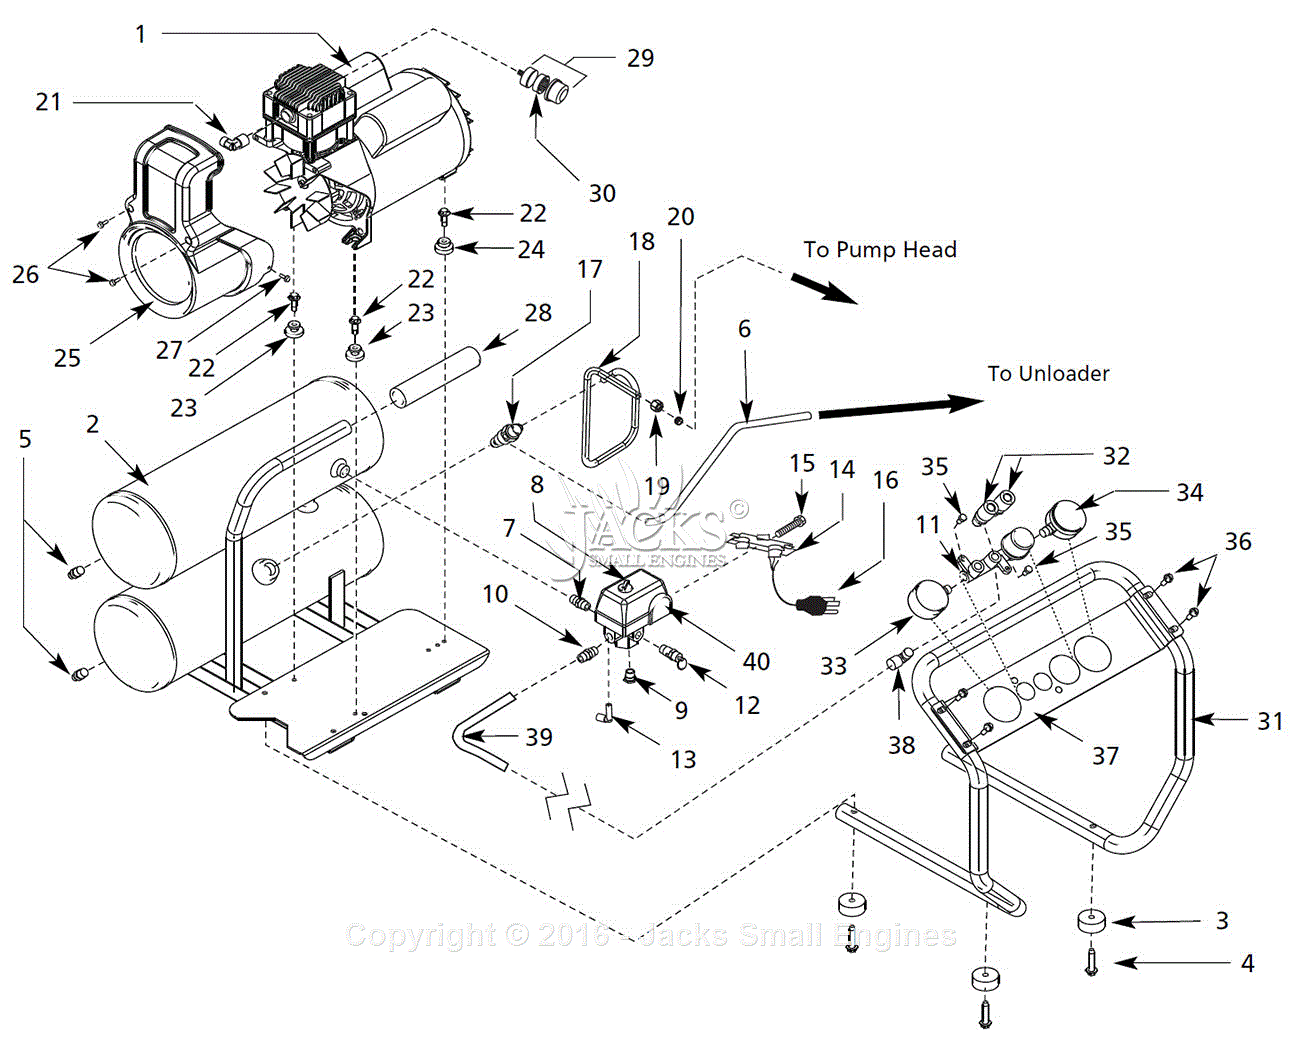 Campbell Hausfeld Air Compressor Parts Diagram Campbell Hausfeld Ex800003 Parts Diagram For Air Compressor Parts